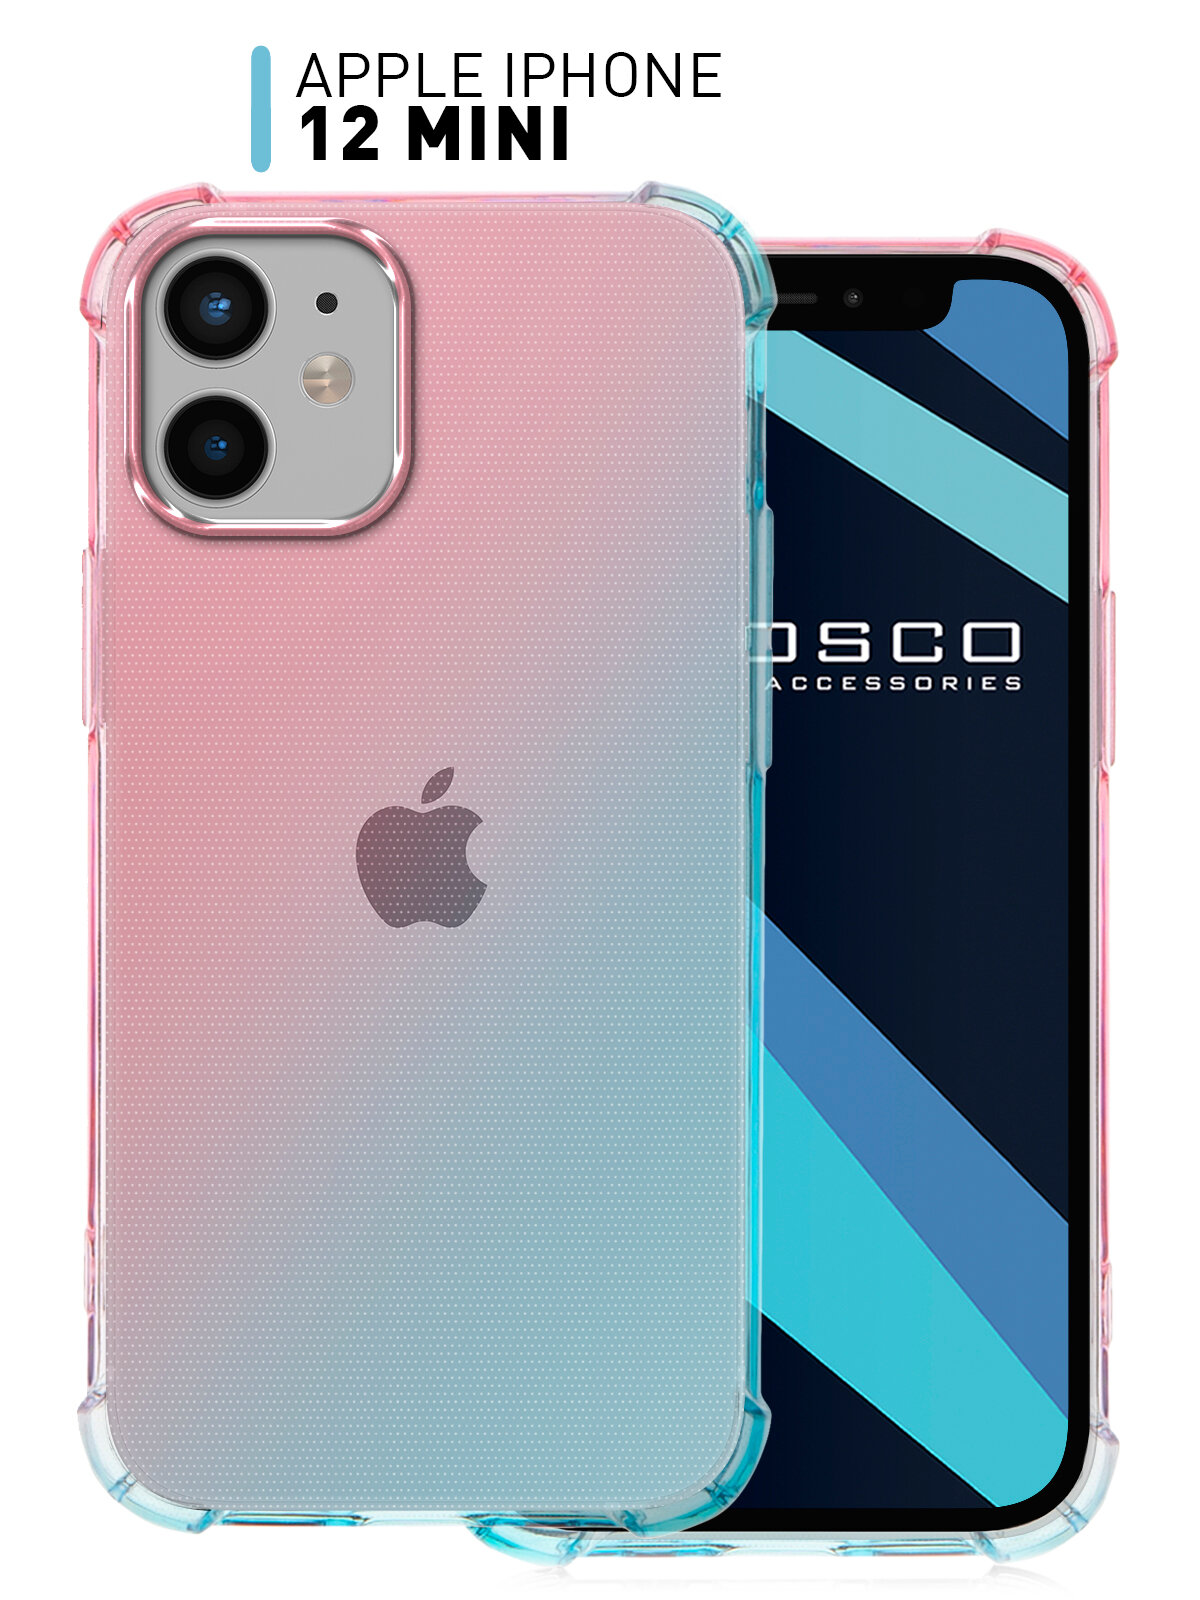 Противоударный чехол для Apple iPhone 12 mini (Эпл Айфон 12 мини) усиленный с бортиком (защитой) камер прозрачный силиконовый розово-голубой ROSCO